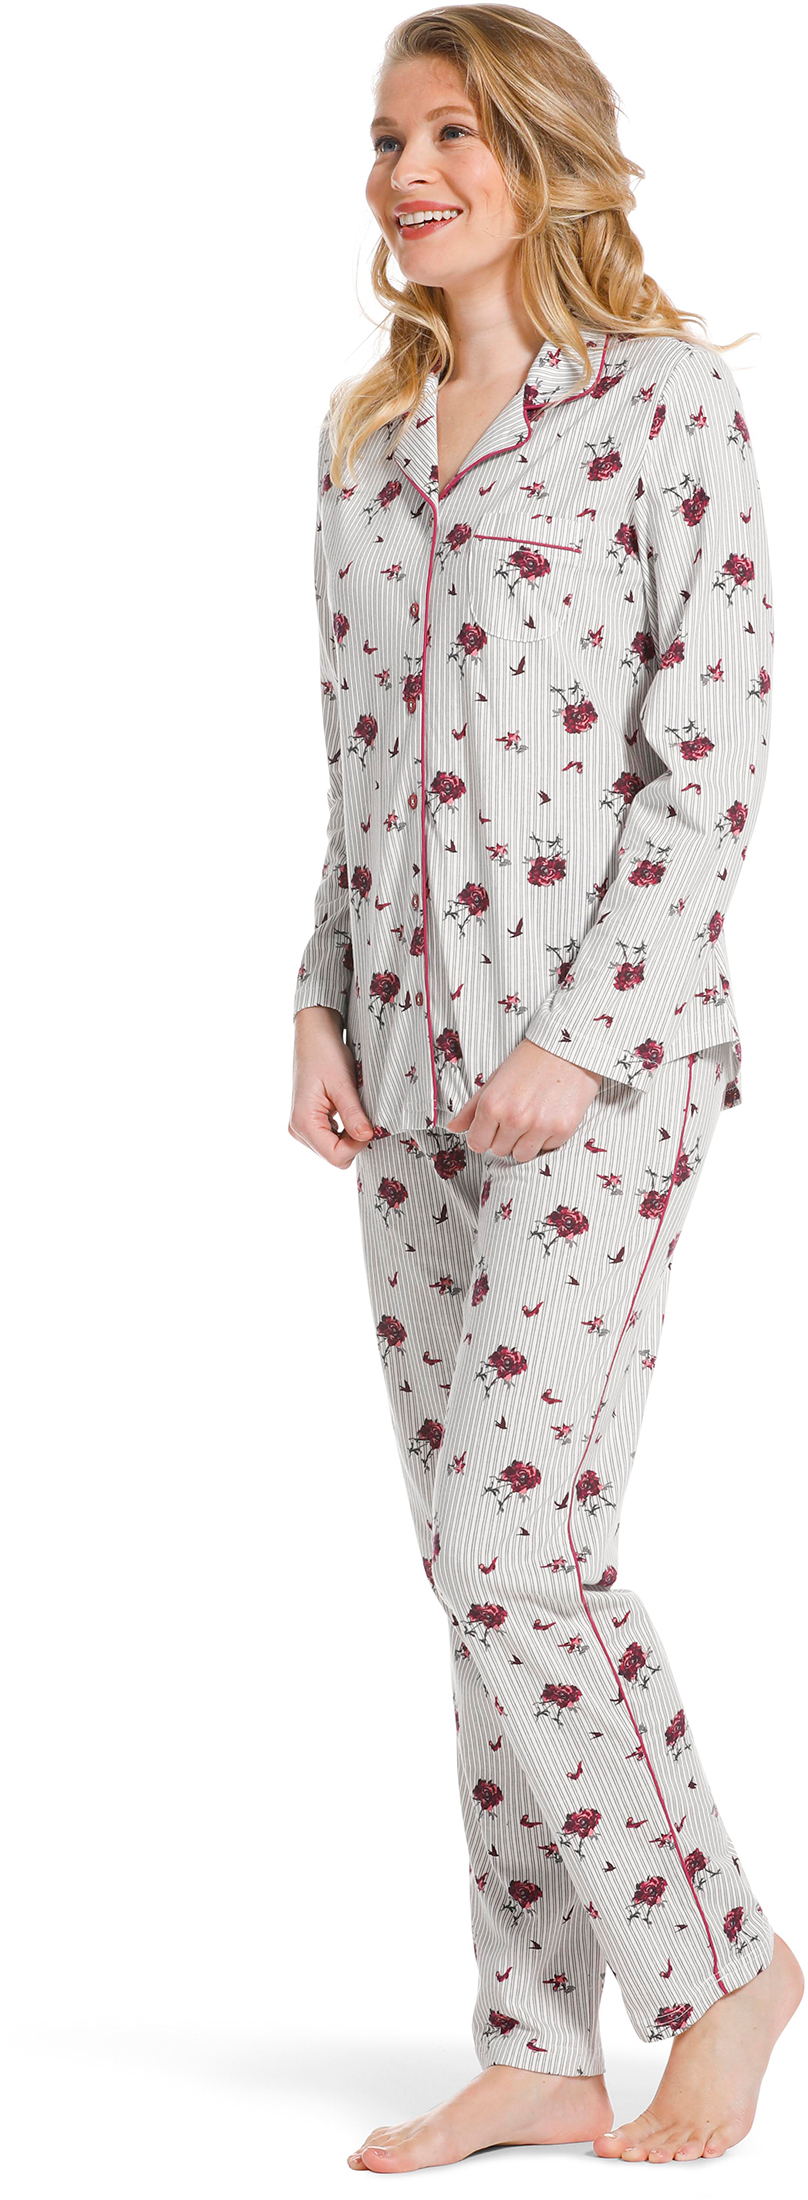 Pastunette doorknoop dames pyjama 20222-156-6 - Grijs - 42